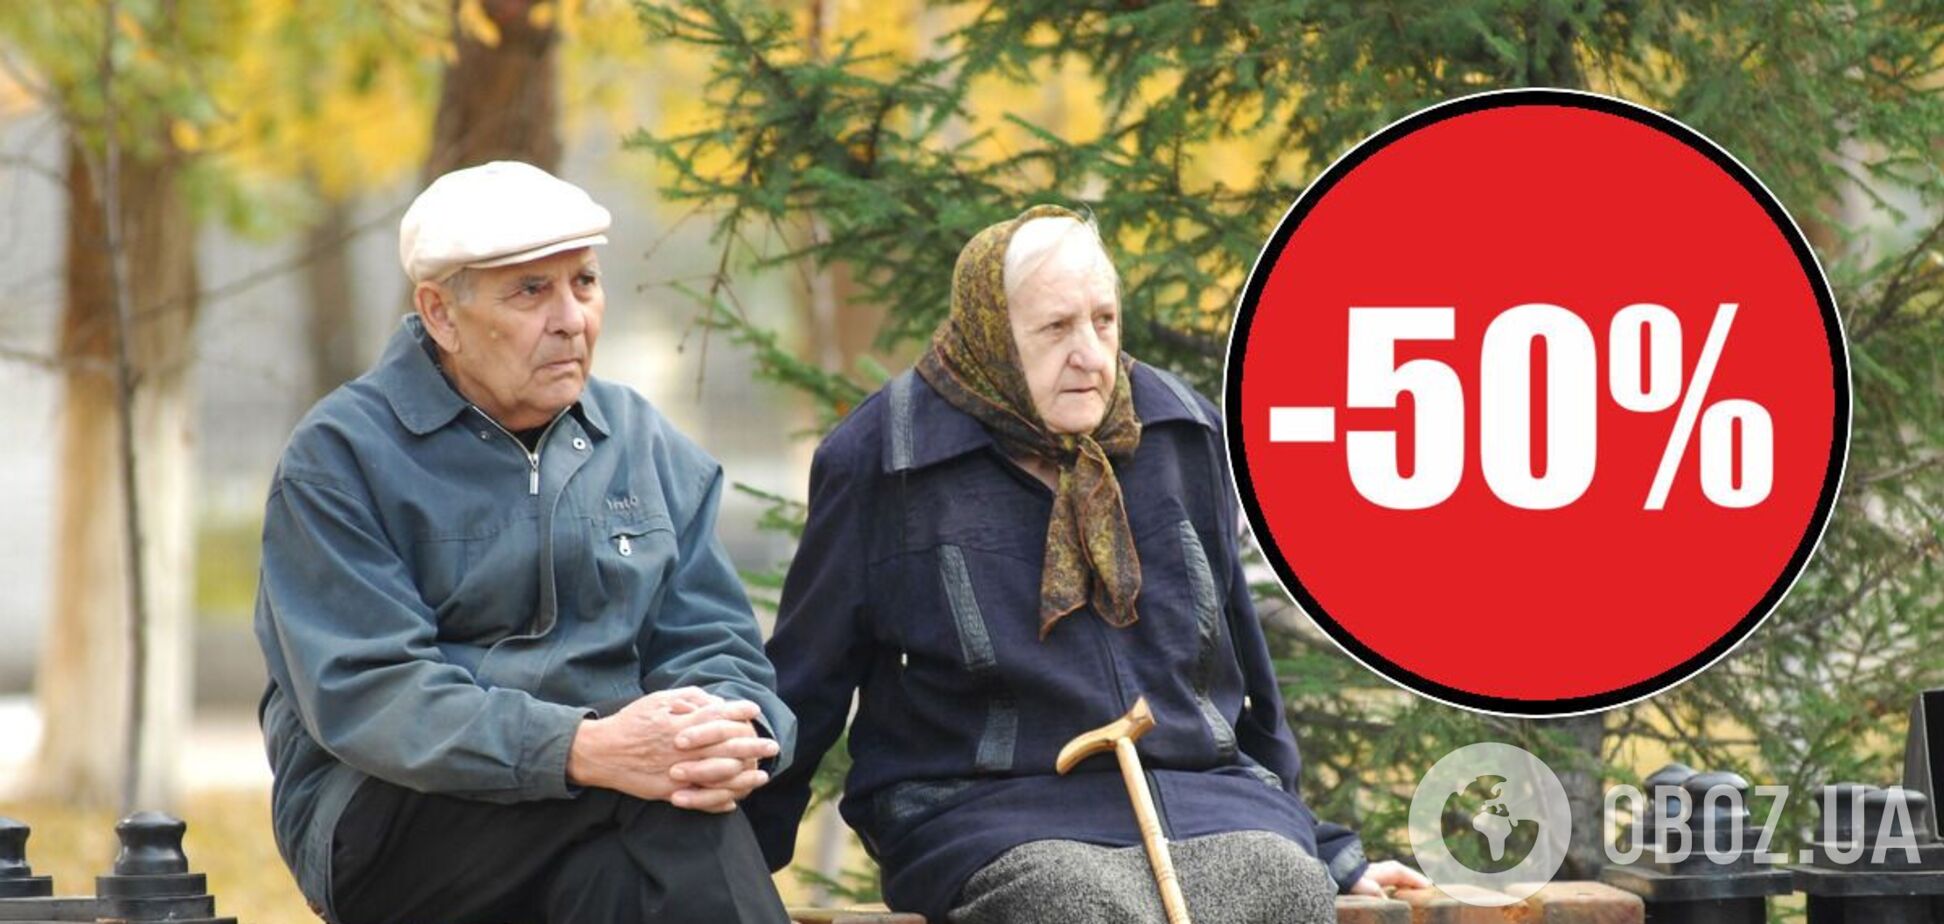 Стало відомо, за що в Україні можуть забрати 50% пенсії